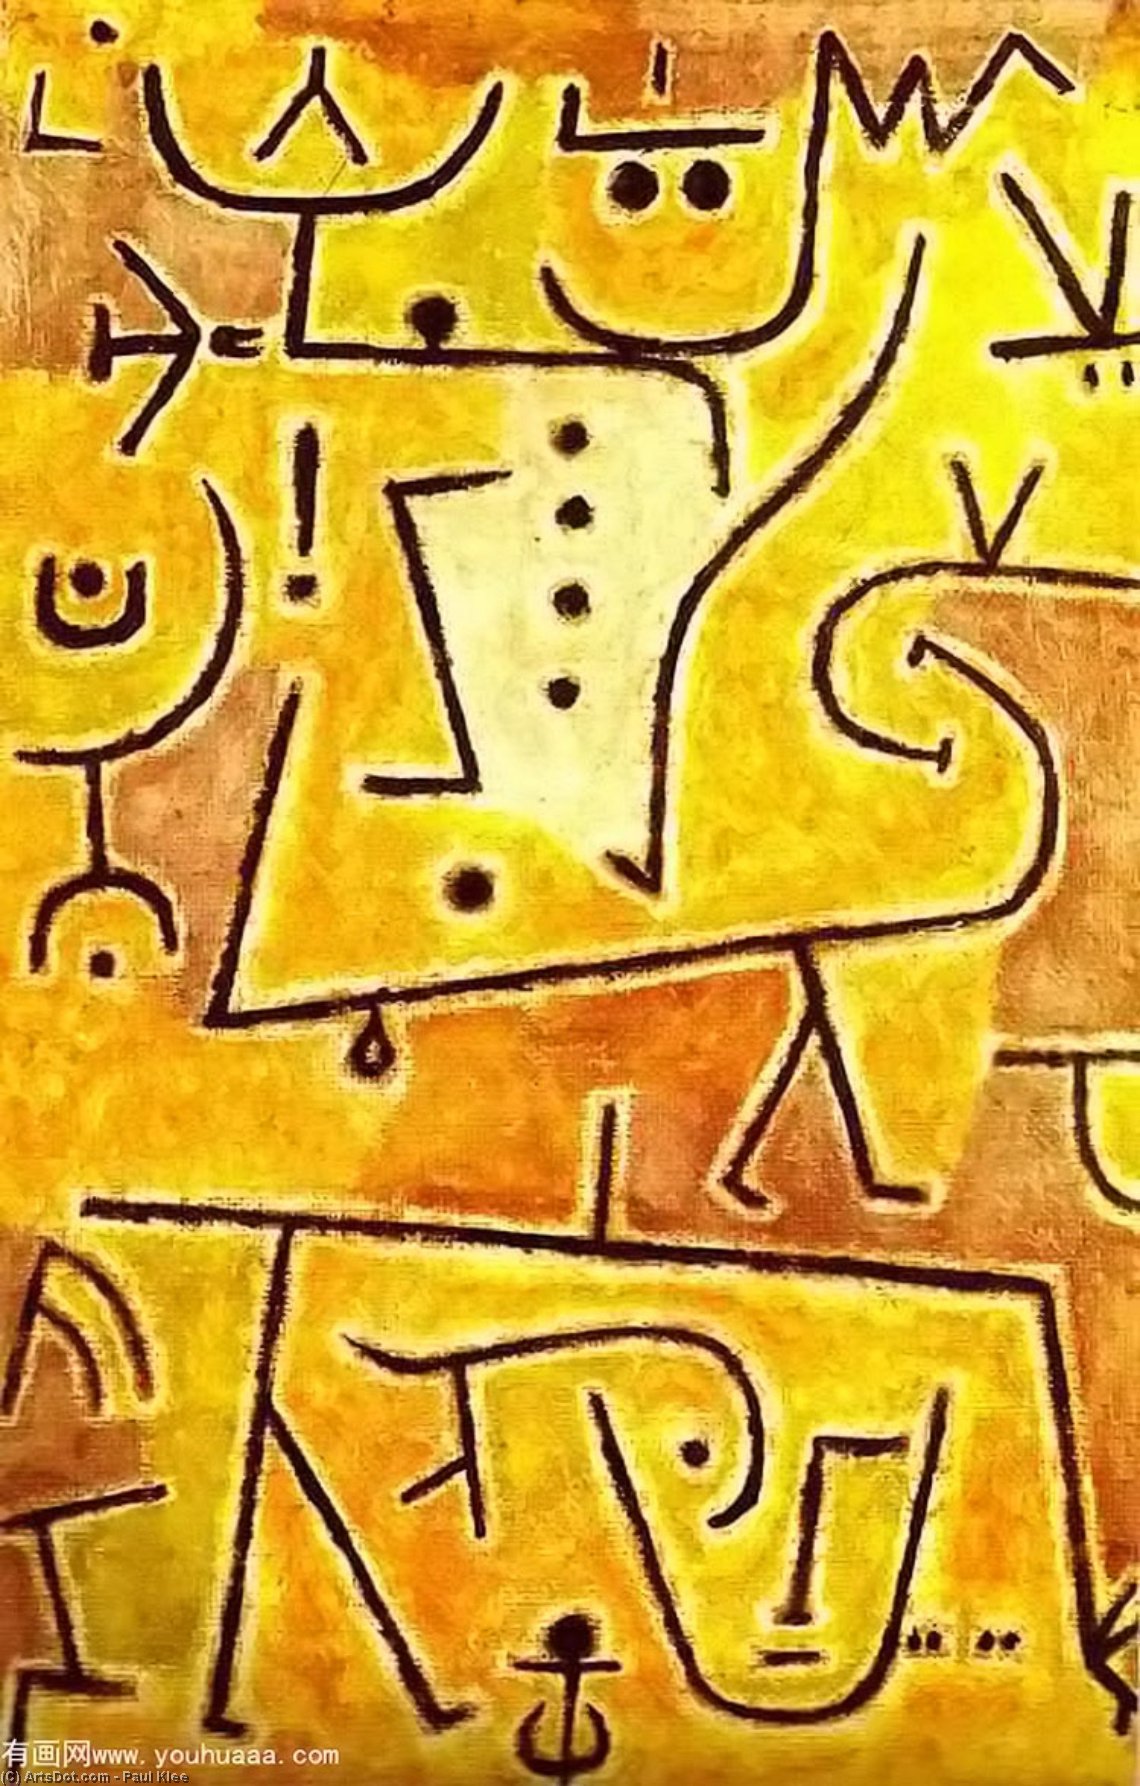 Wikoo.org - موسوعة الفنون الجميلة - اللوحة، العمل الفني Paul Klee - Red waistcoat